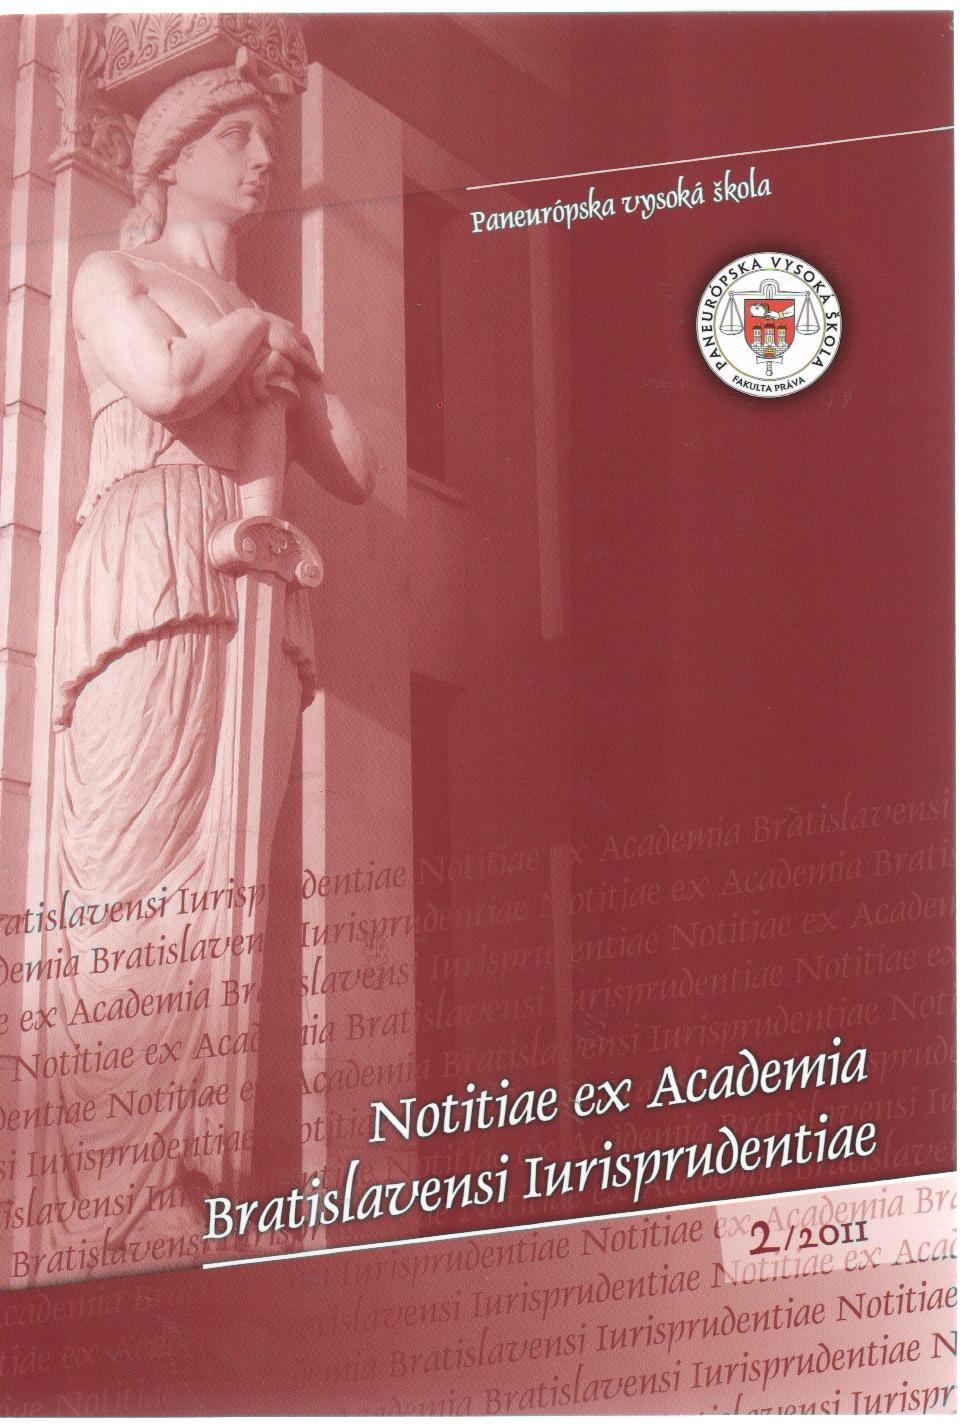 2/2011 Notitiae ex Academia Bratislavensi Iurisprudentiae